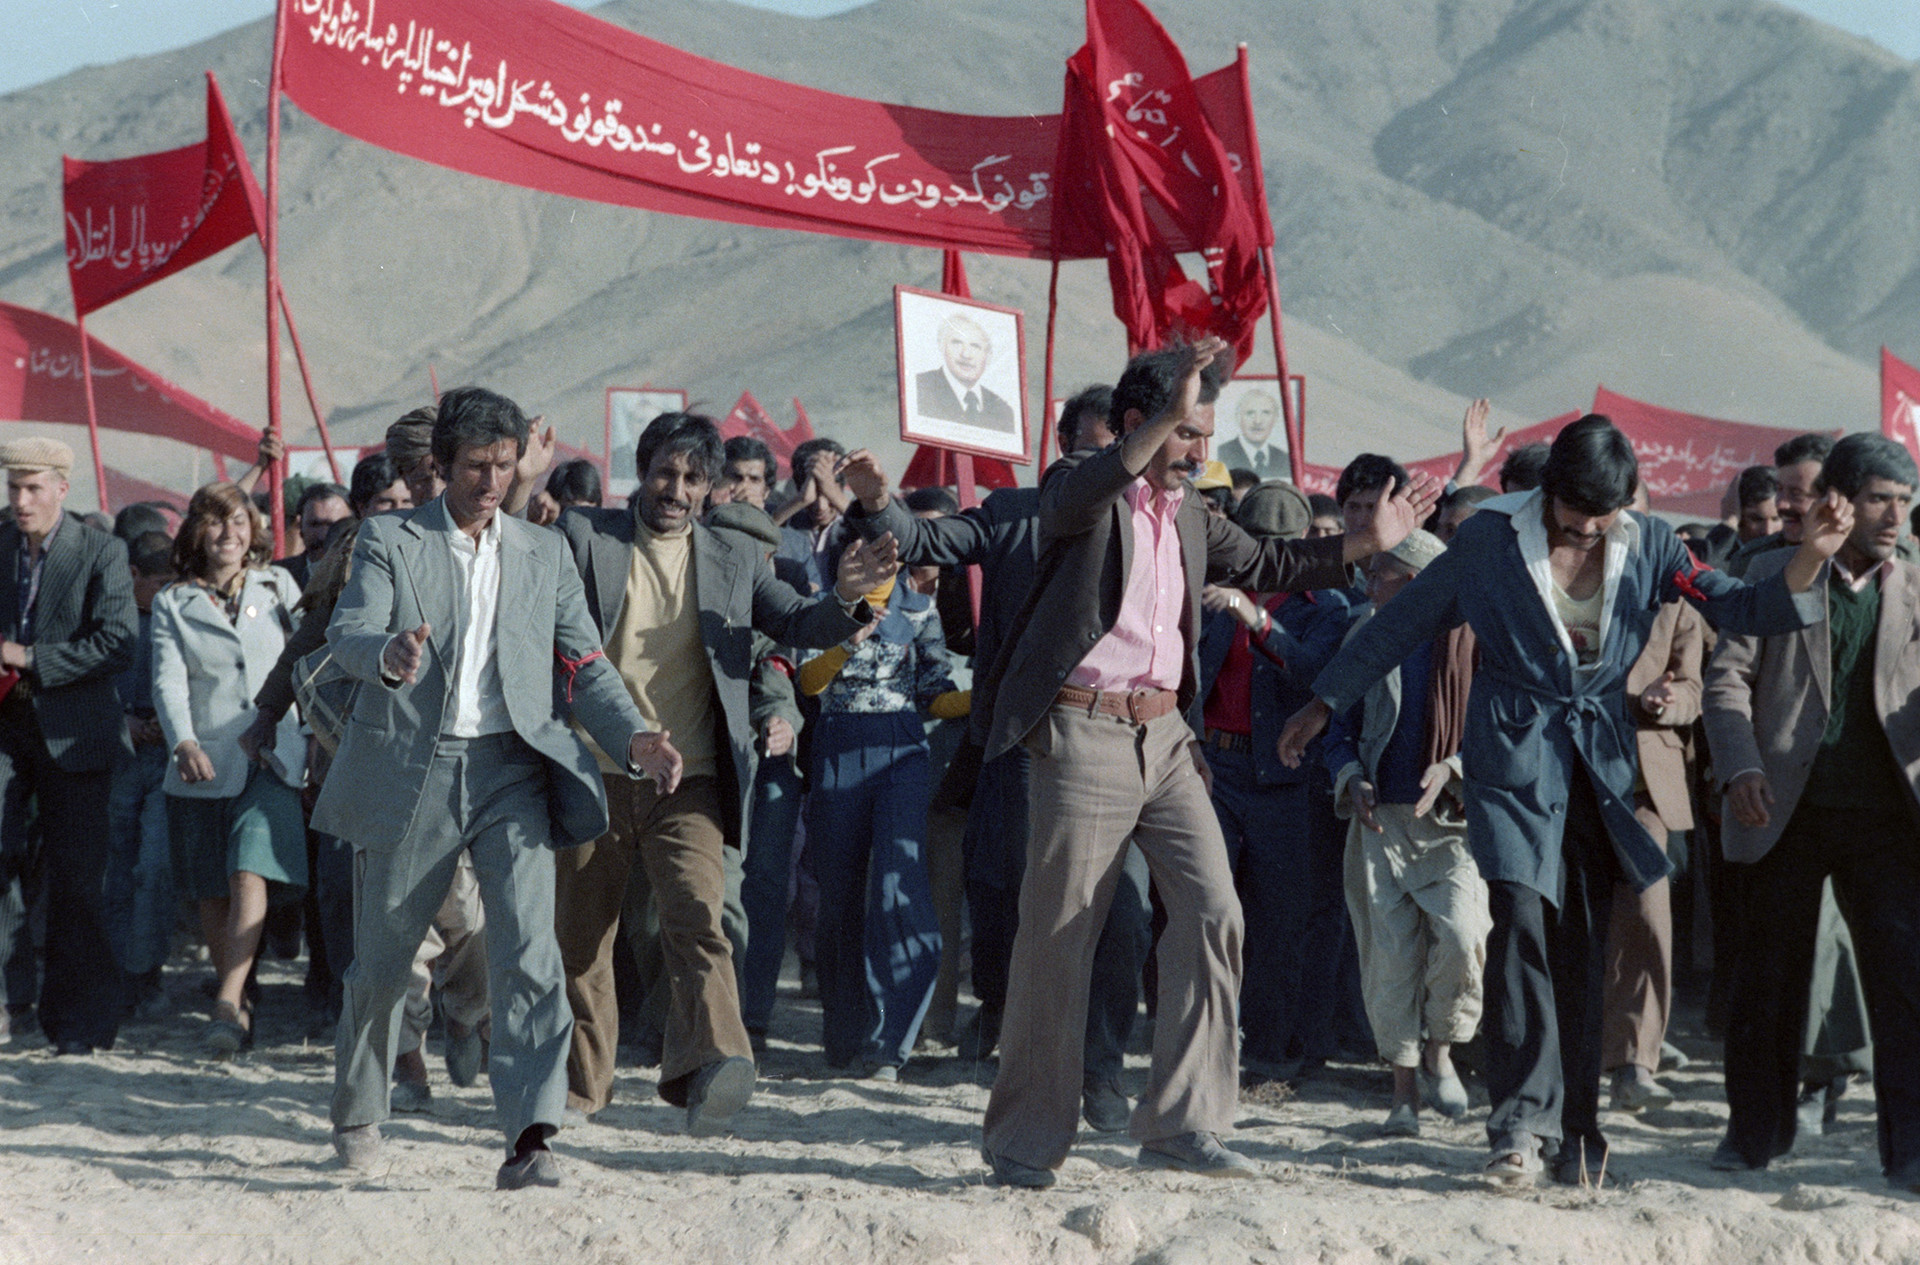 Des socialistes afghans célèbrent la victoire, 1979